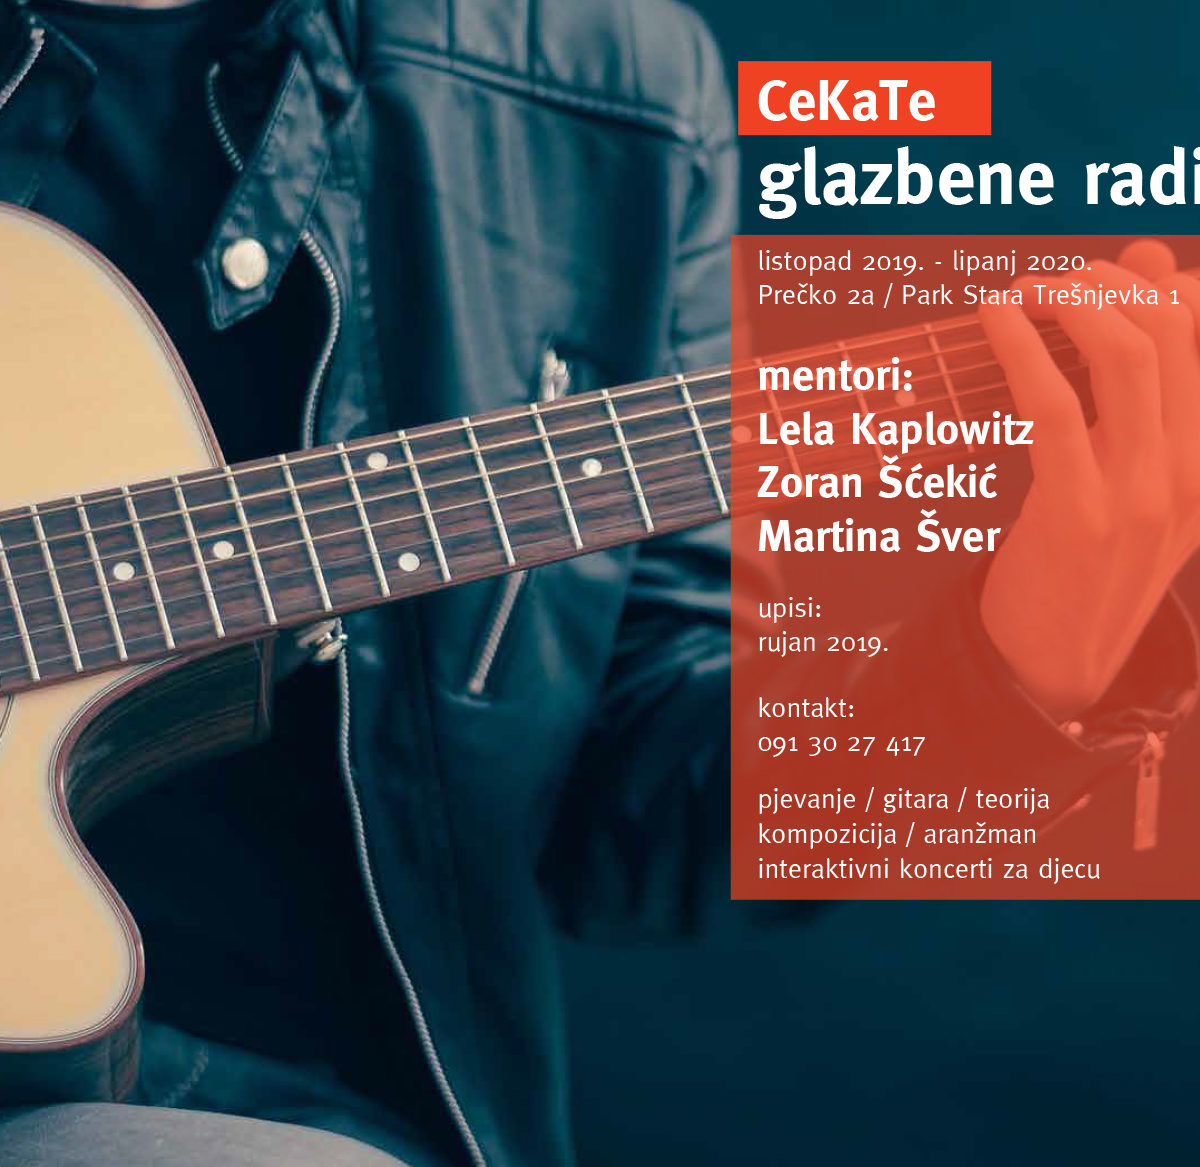 Upisi u glazbene radionice CeKaTe-a 2019./2020.